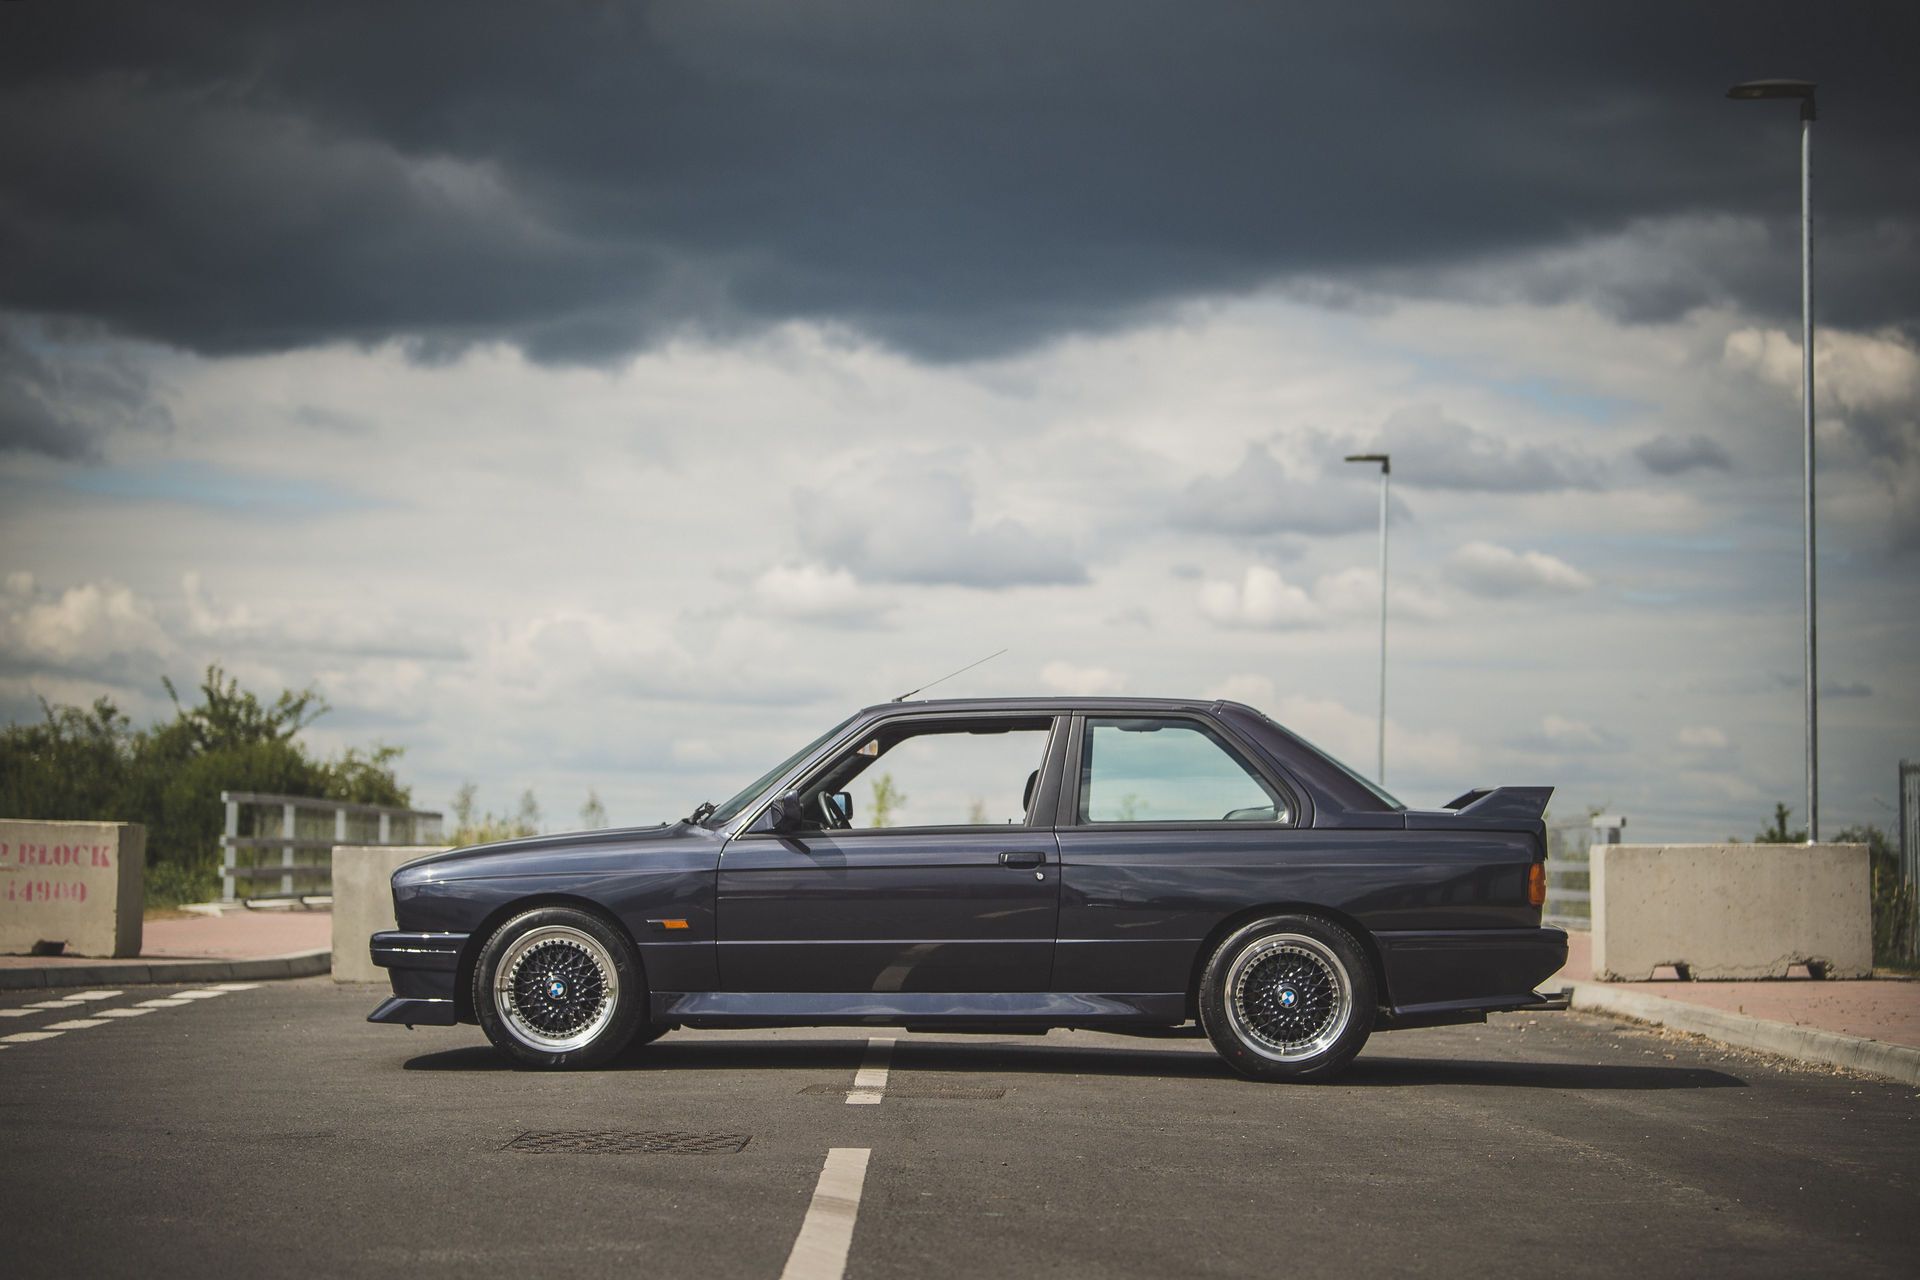 BMW M3 Evolution II, якій виповнилося 32 роки, готові продати за будь-яку суму.